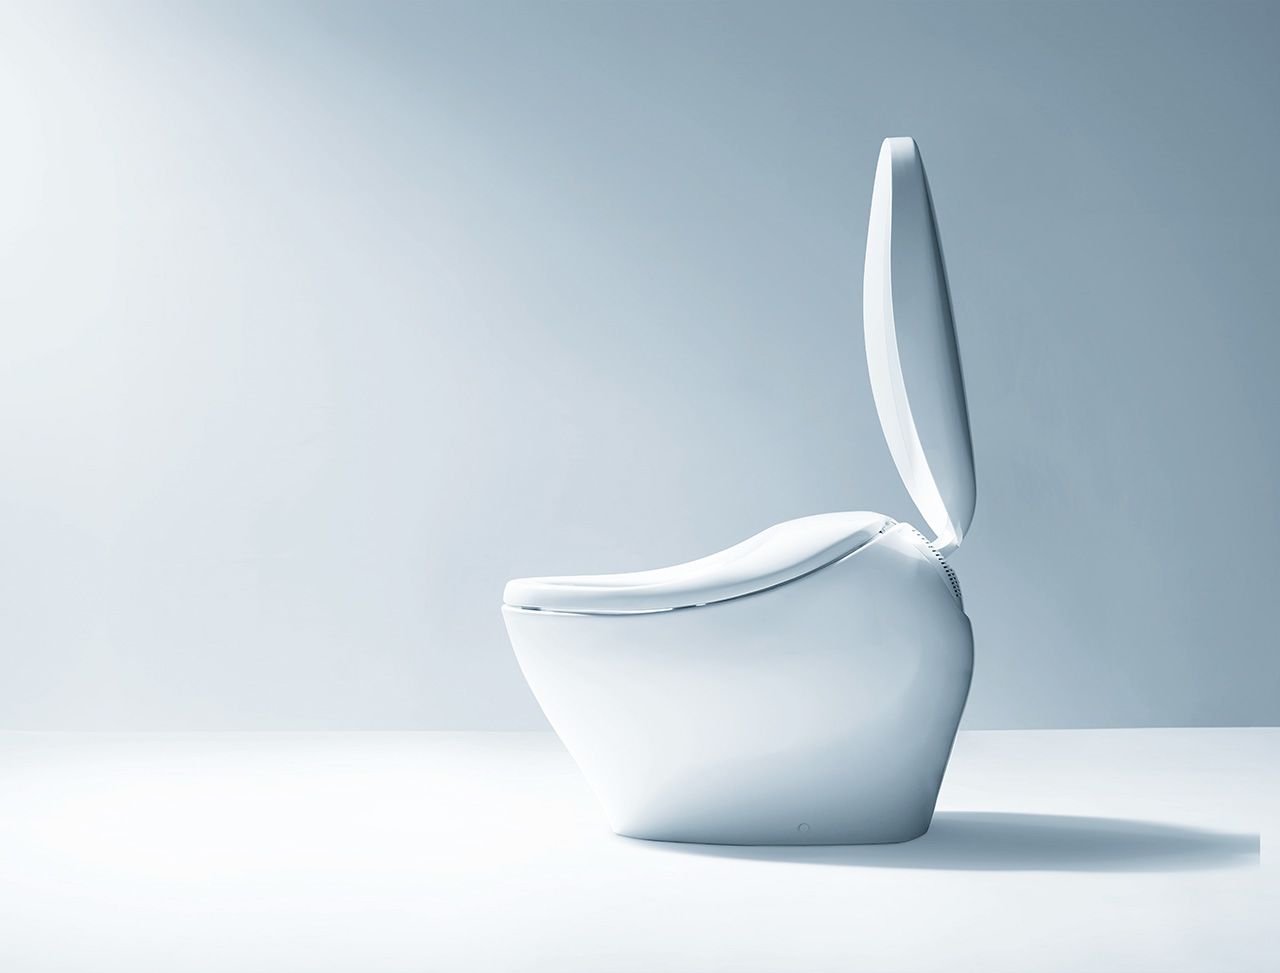  يدمج نموذج Neorest NX المذهل، وهو النموذج الدولي القياسي لـمراحيض توتو الذي تم إصداره في عام 2017، وظائف Washlet في الوعاء الخزفي.